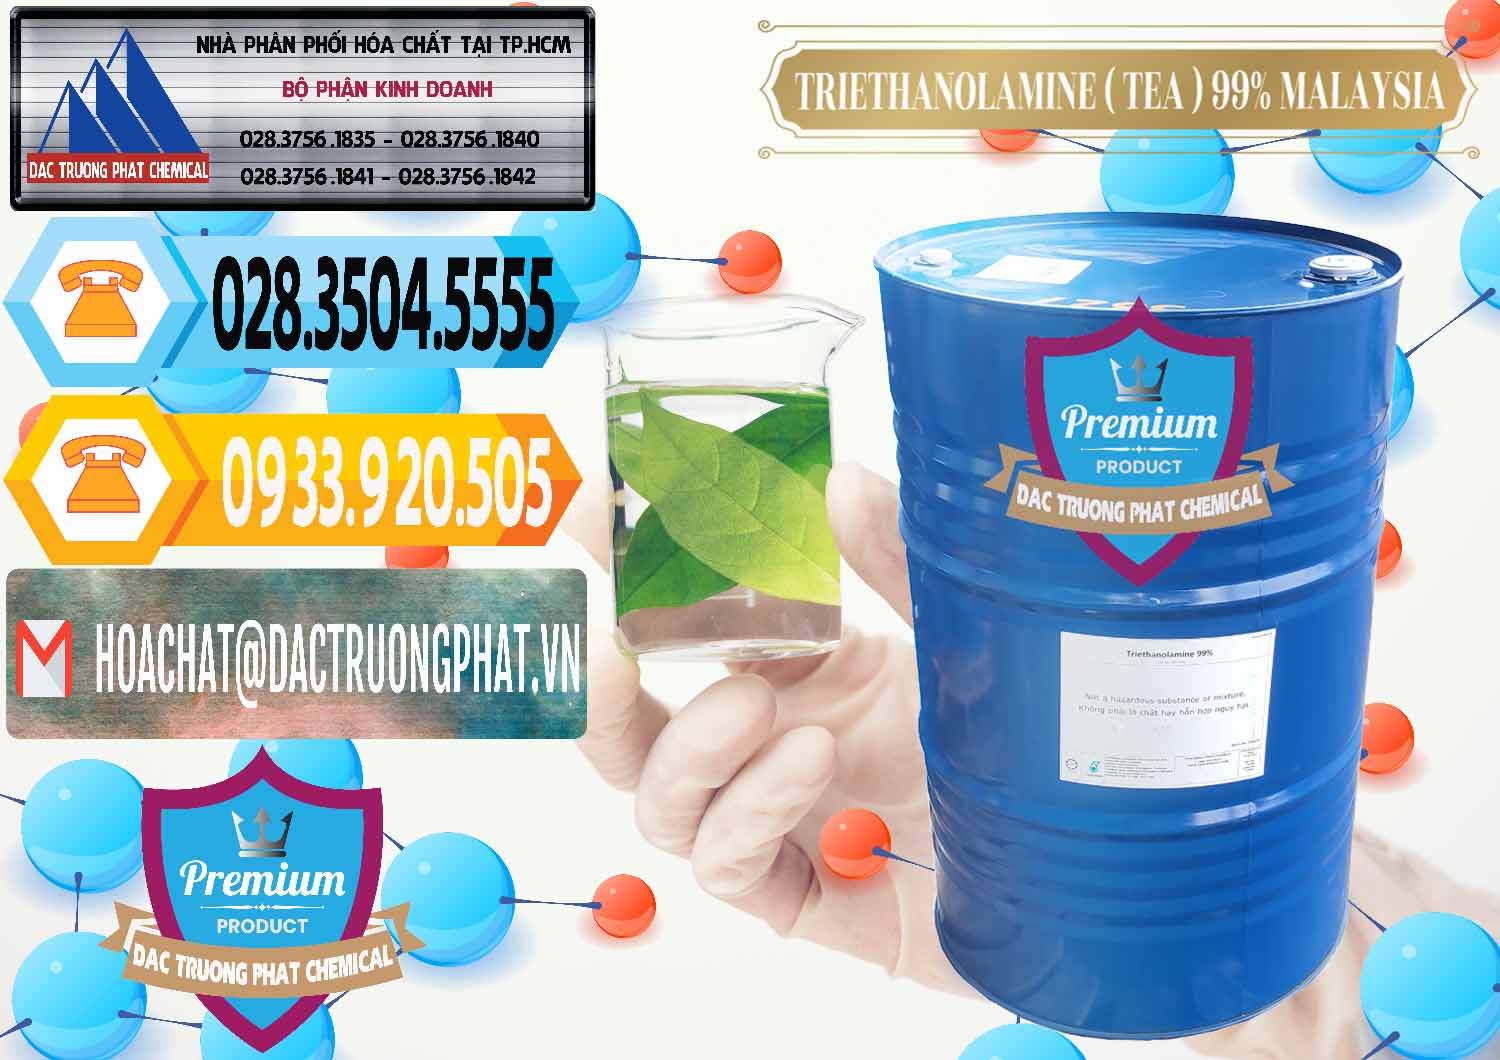 Cty nhập khẩu & bán TEA - Triethanolamine 99% Mã Lai Malaysia - 0323 - Cty cung cấp - phân phối hóa chất tại TP.HCM - hoachattayrua.net